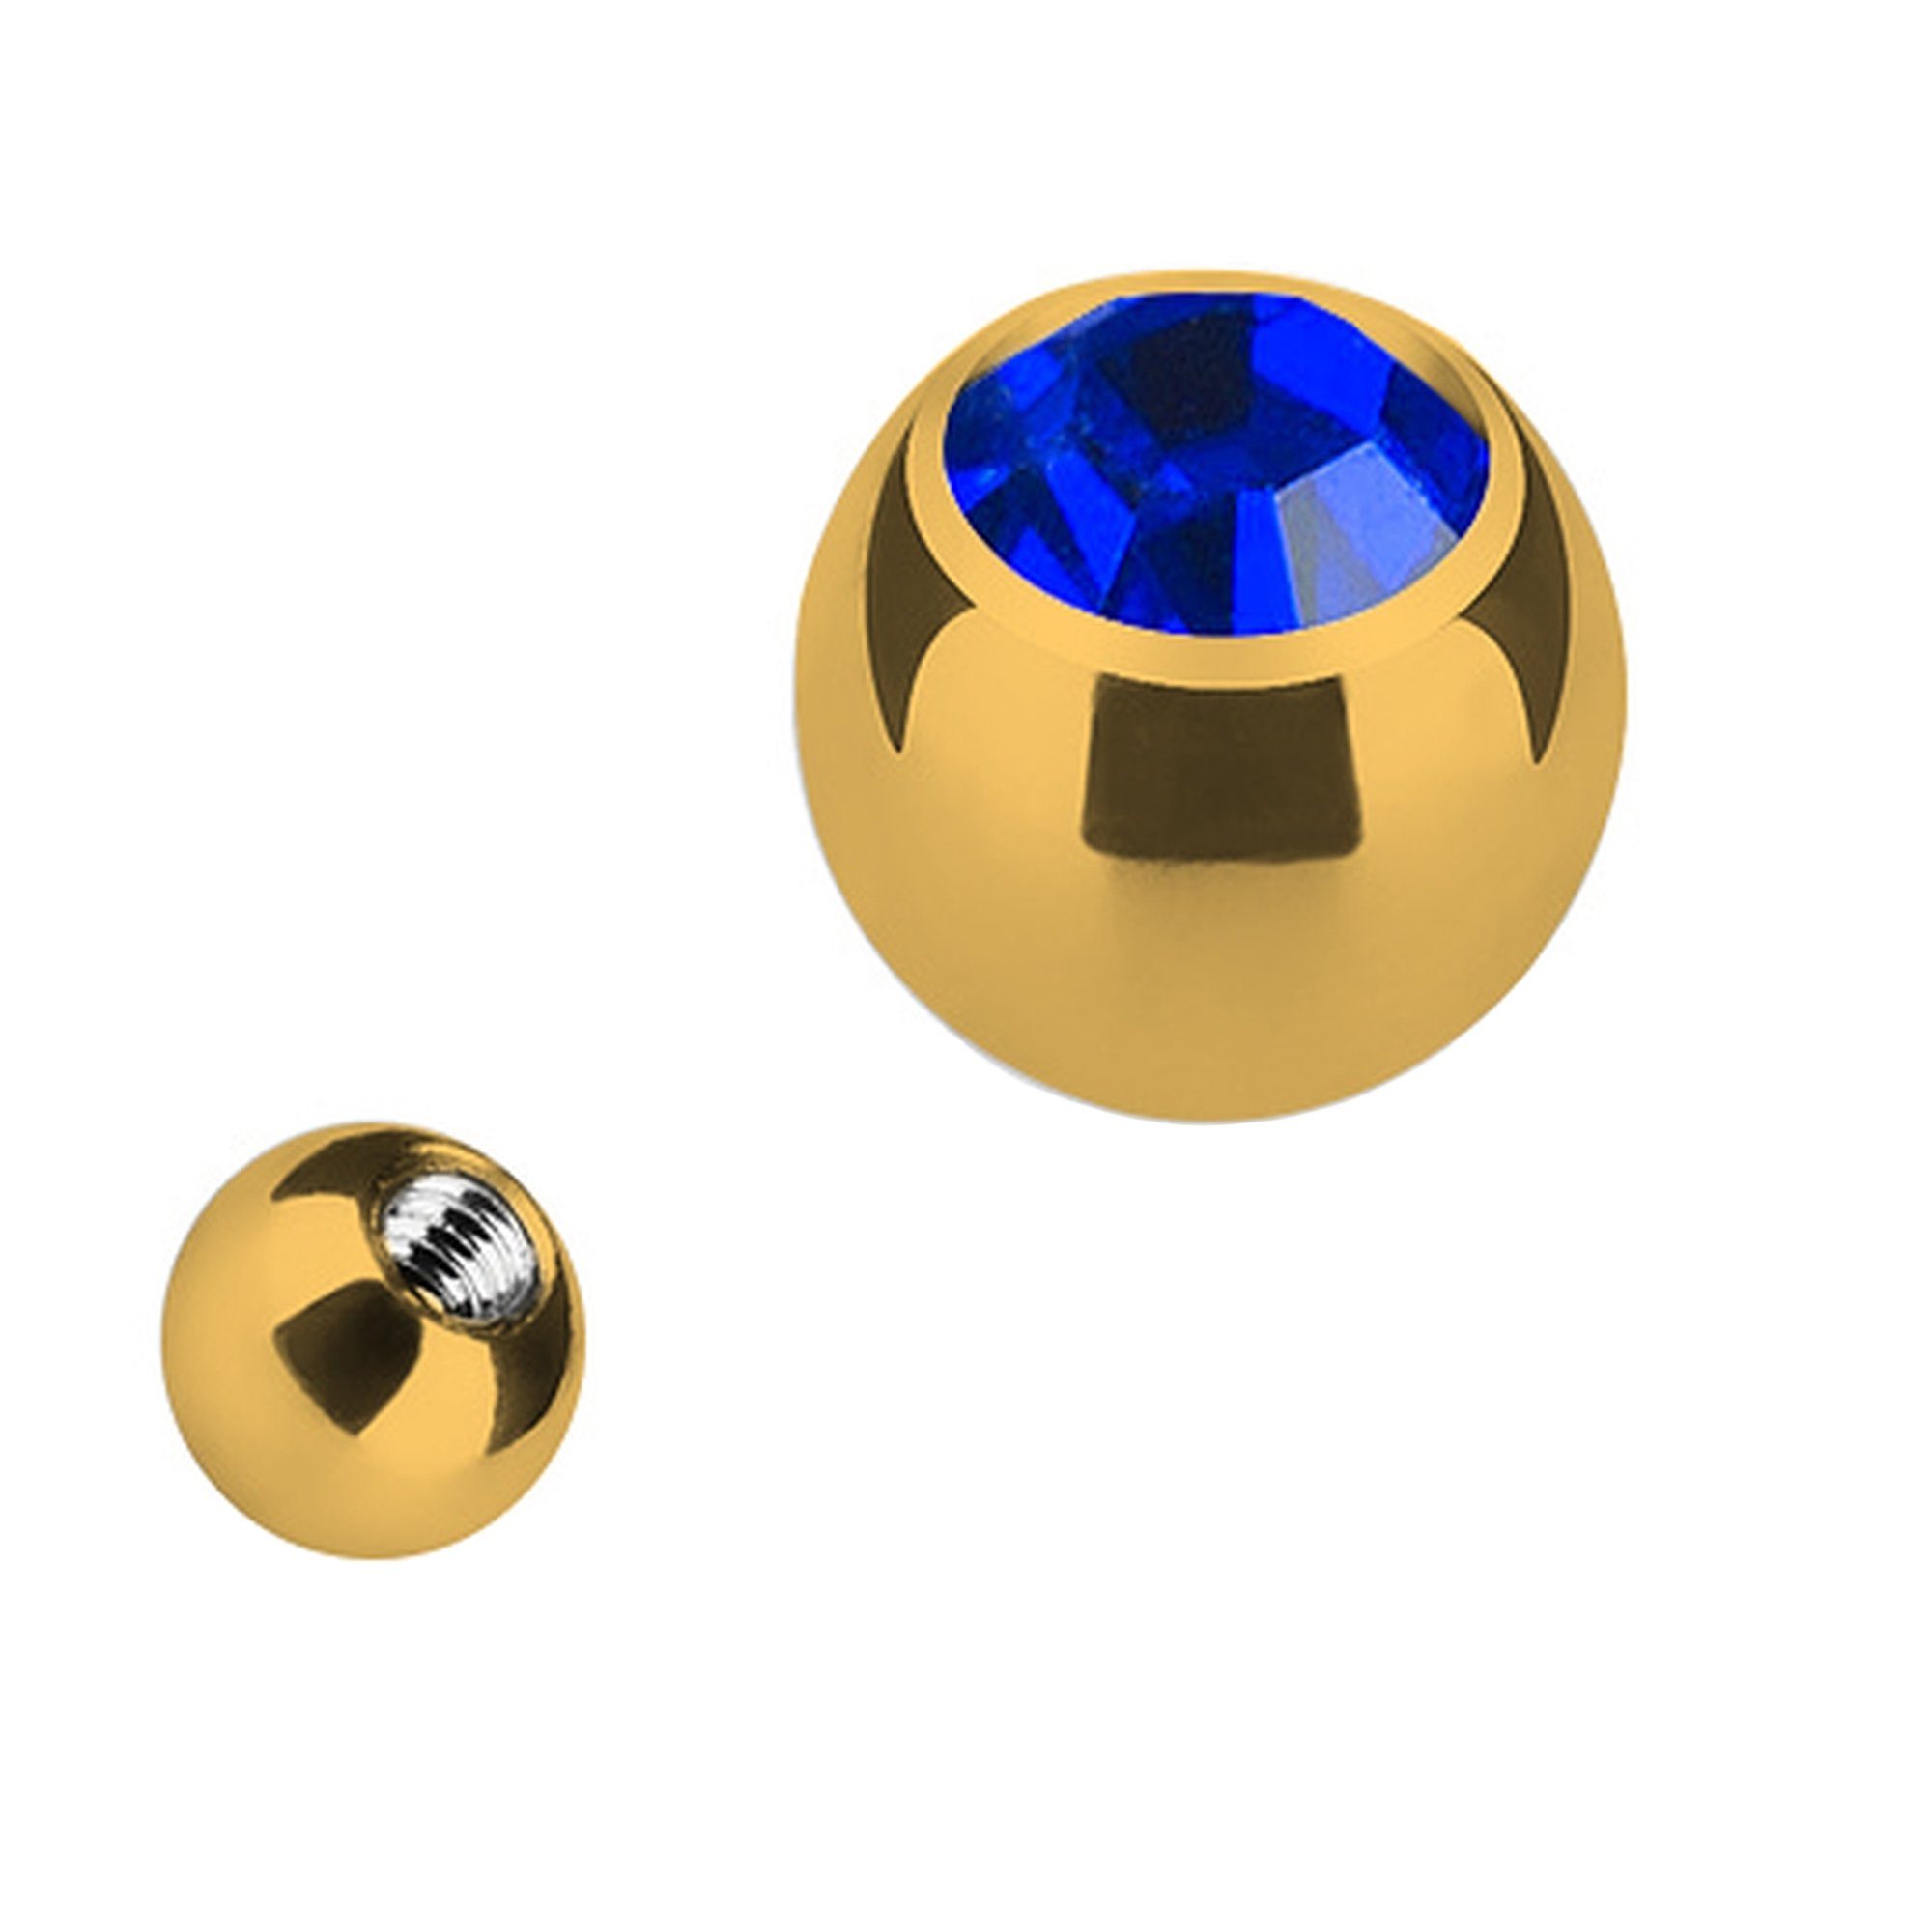 Edelstahl Ersatz Gold mit Kristall, Kugel Verschluss Ersatzteile Piercing mit Taffstyle Strass Blau Gold Piercing-Set Schraubkugel Verschlusskugel